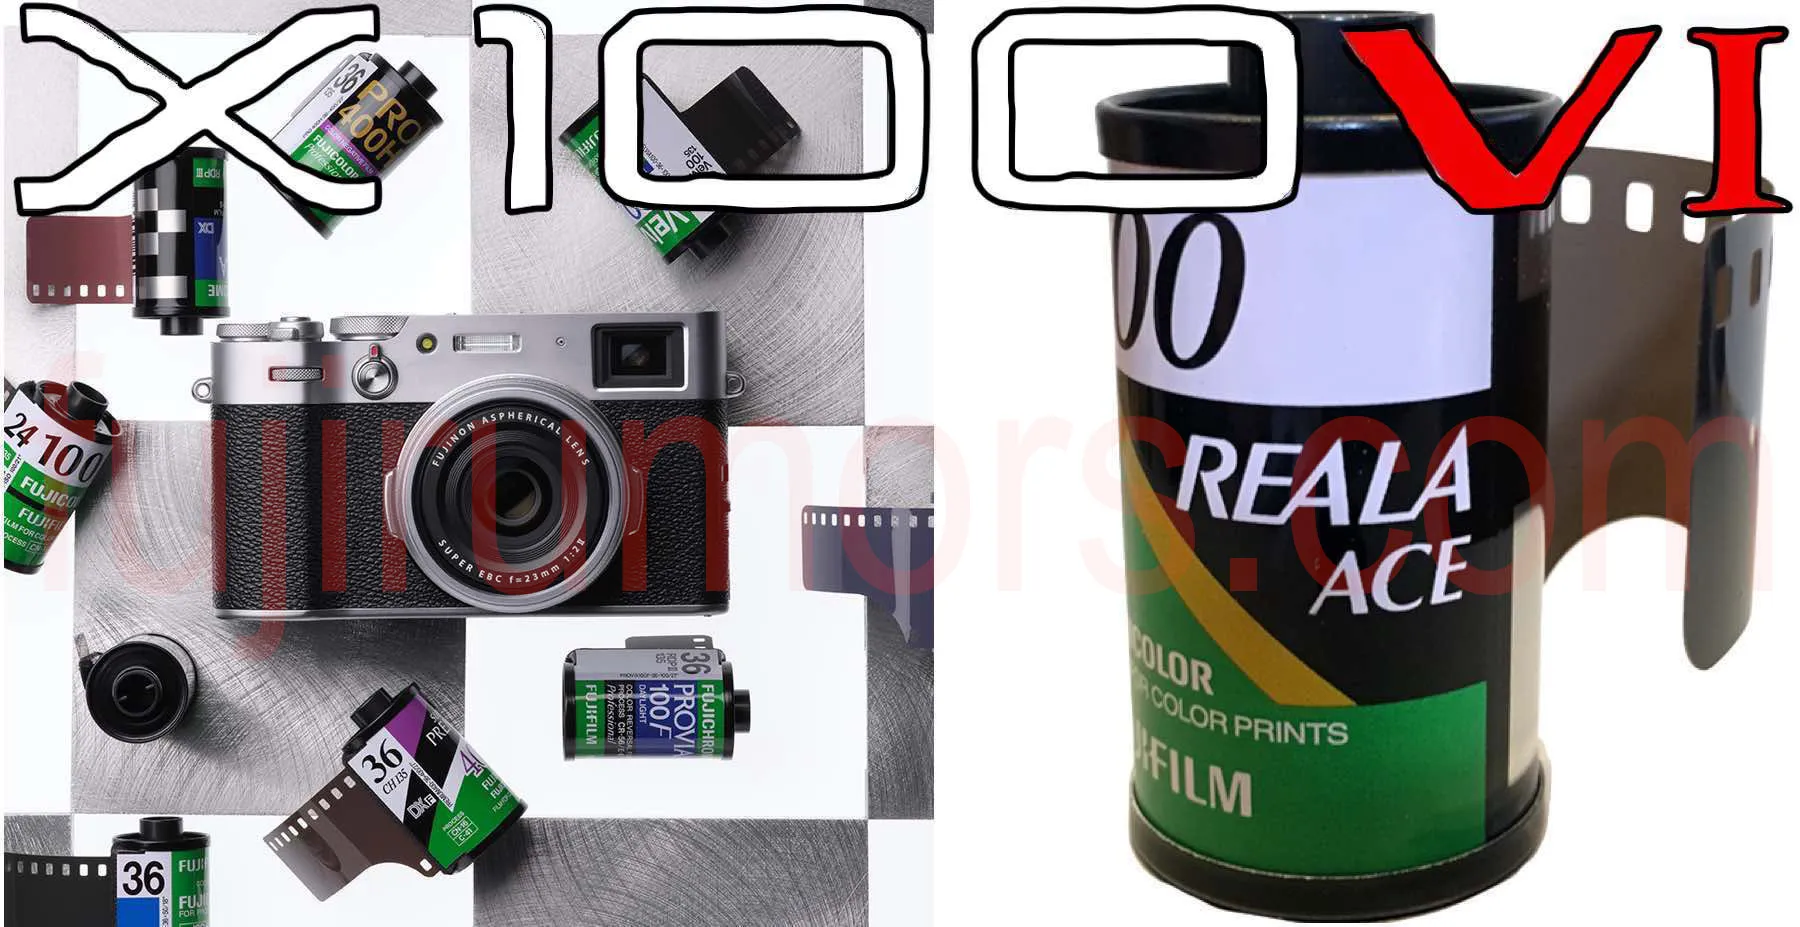 Fujifilm X100VI sẽ lớn hơn một chút so với X100V và được tích hợp giả lập màu REALA ACE